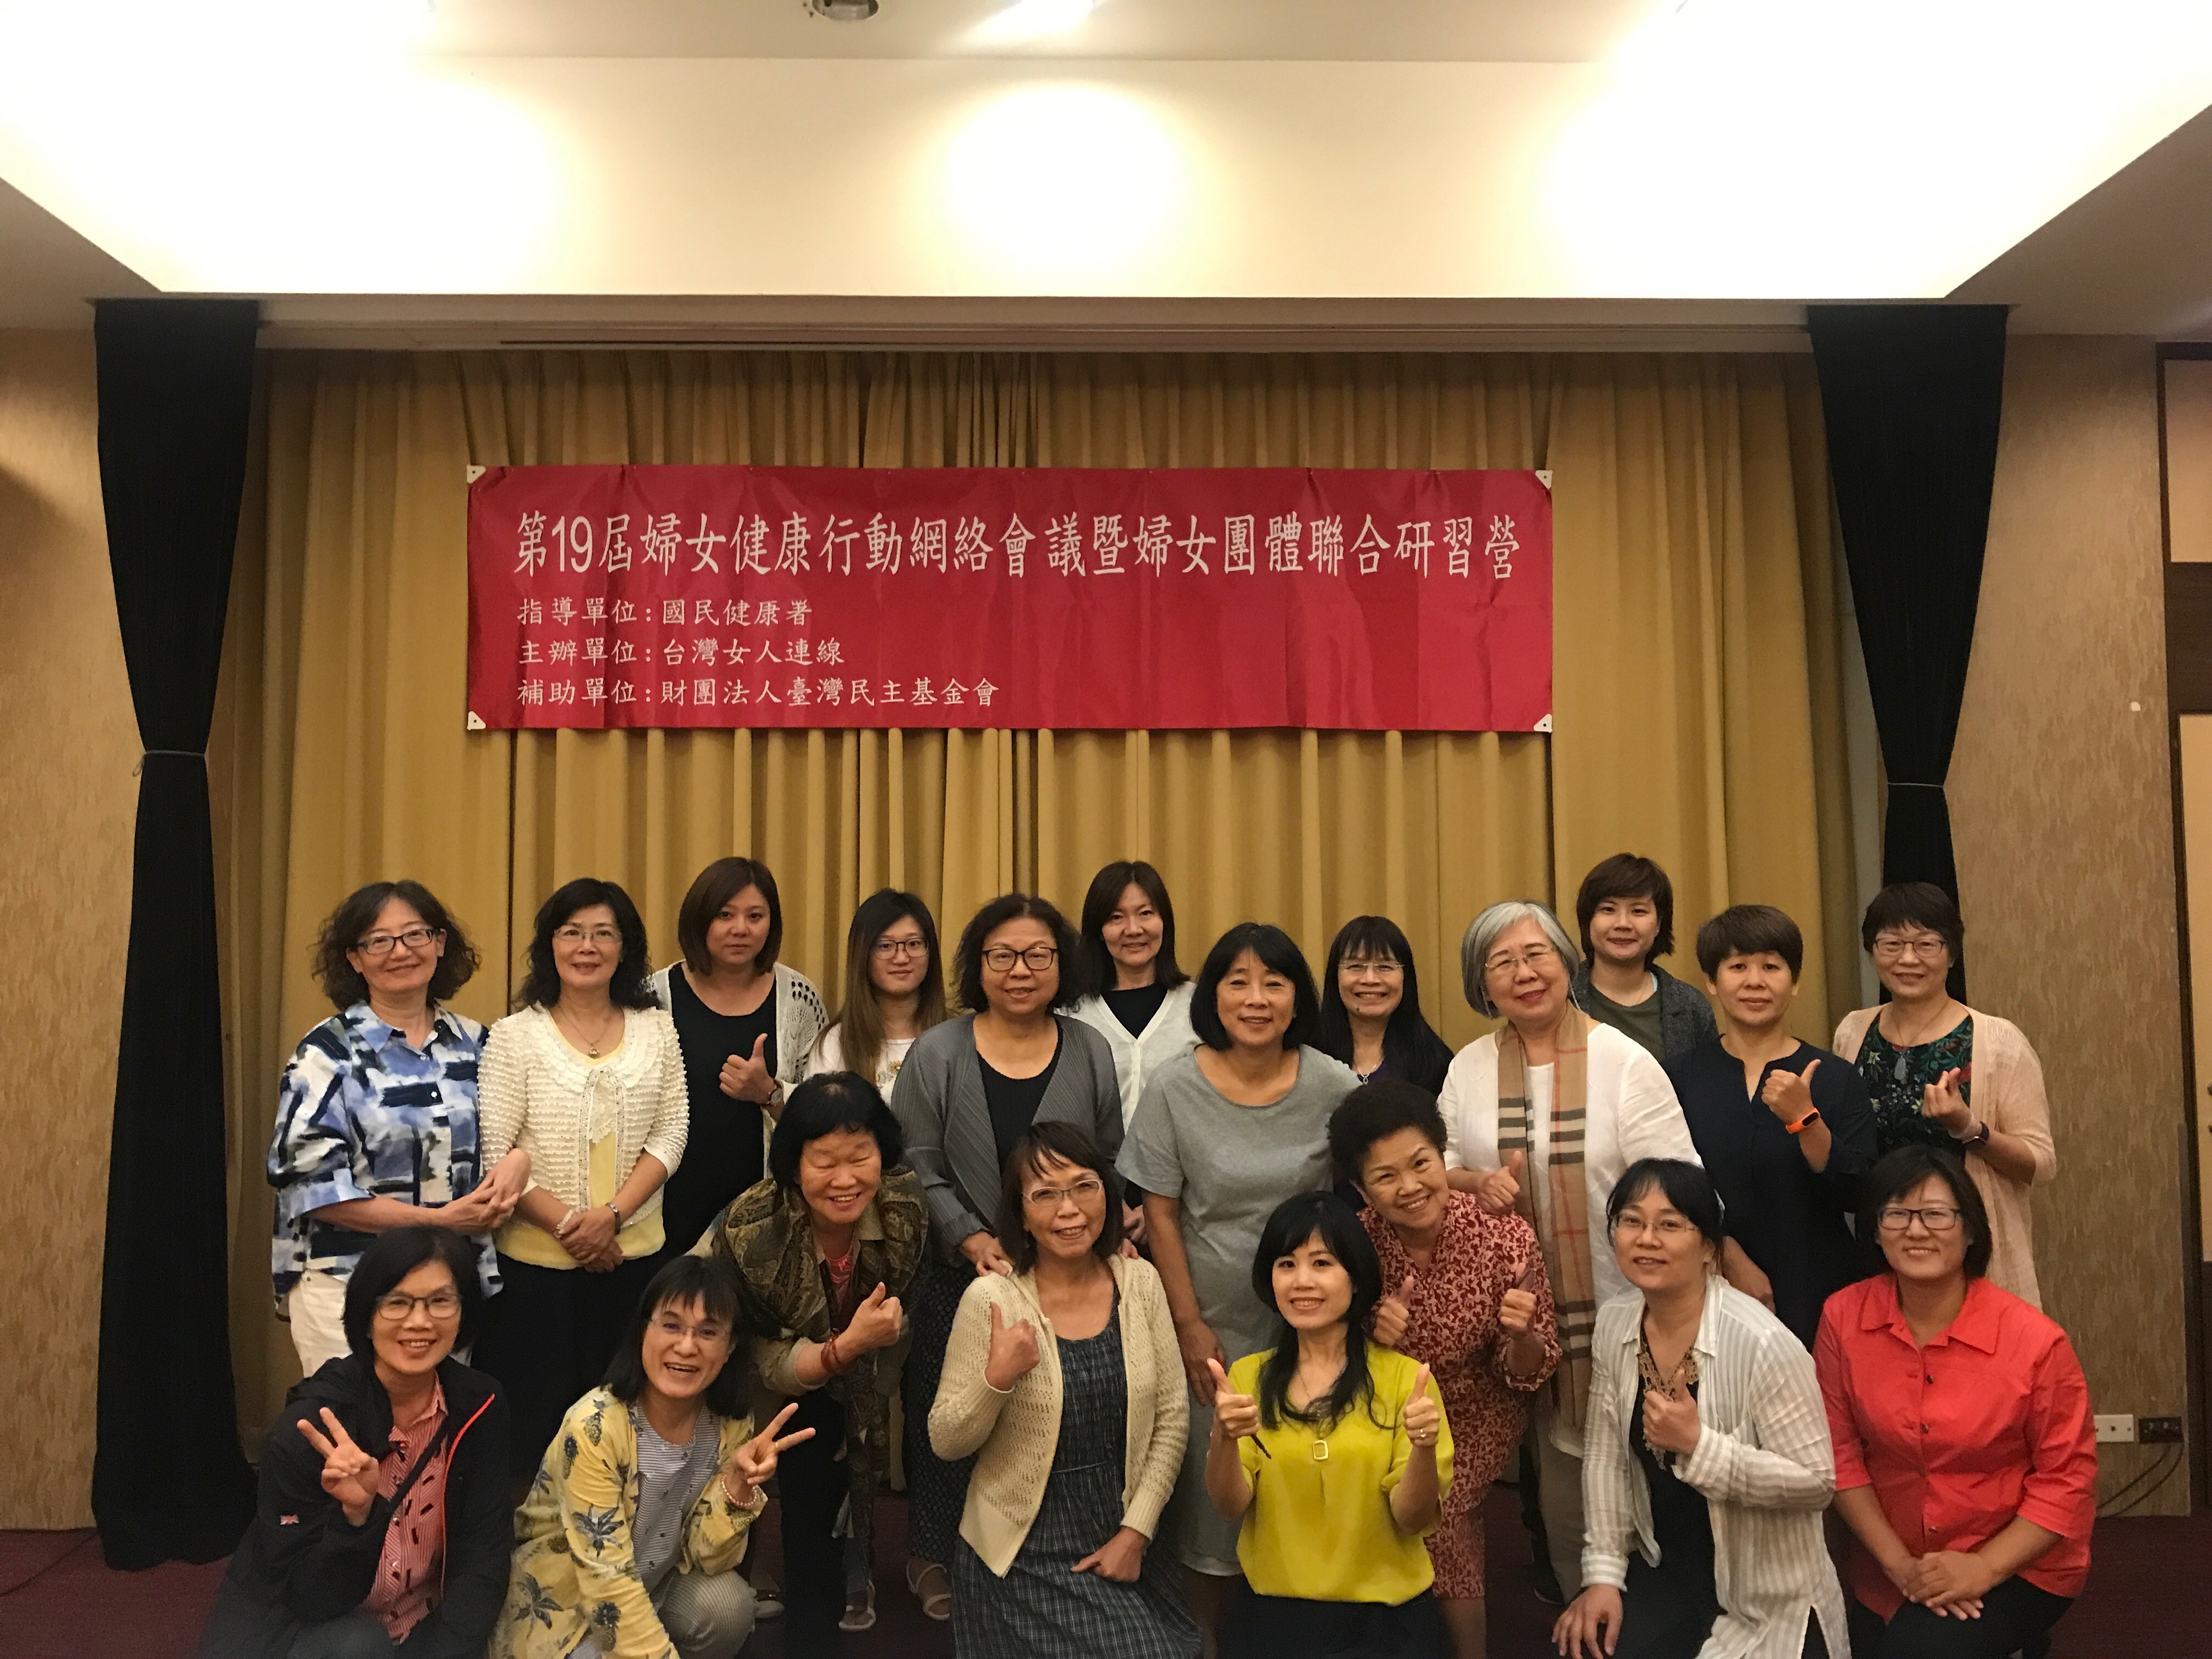 【活動紀實】第19屆婦女健康行動網絡會議暨婦女團體聯合研習營